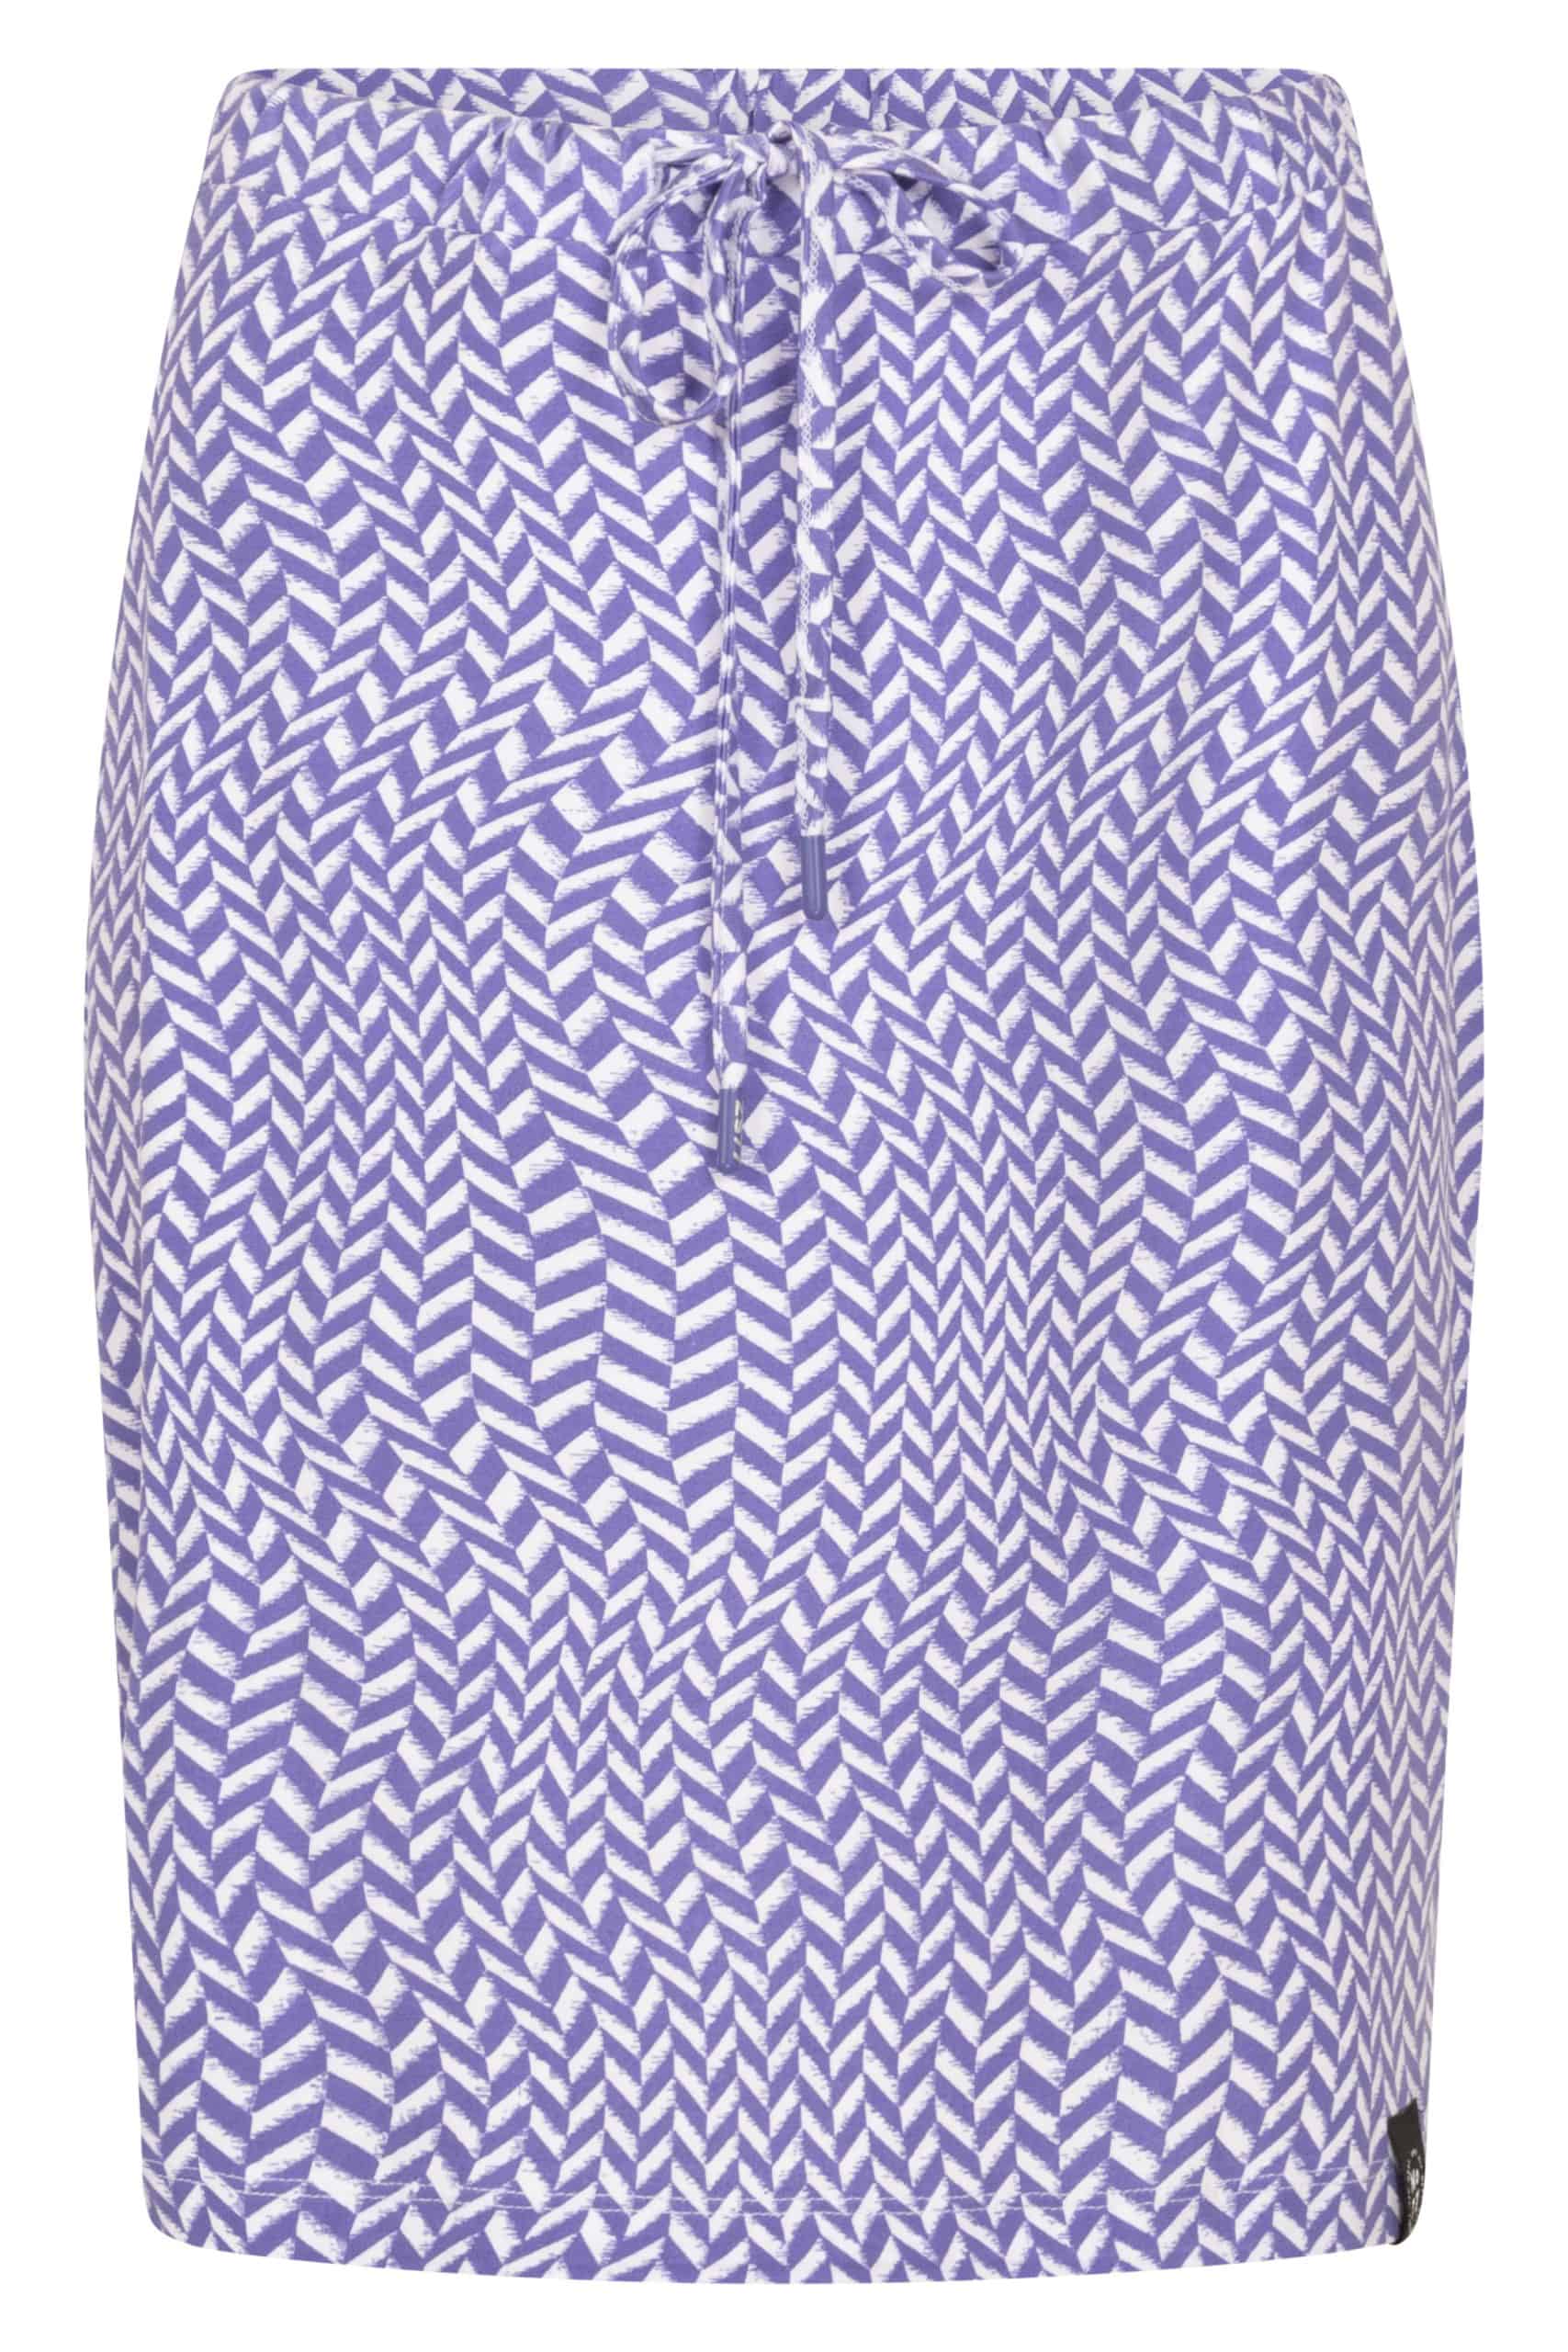 Zoso 223 Brenda Printed Skirt Purple